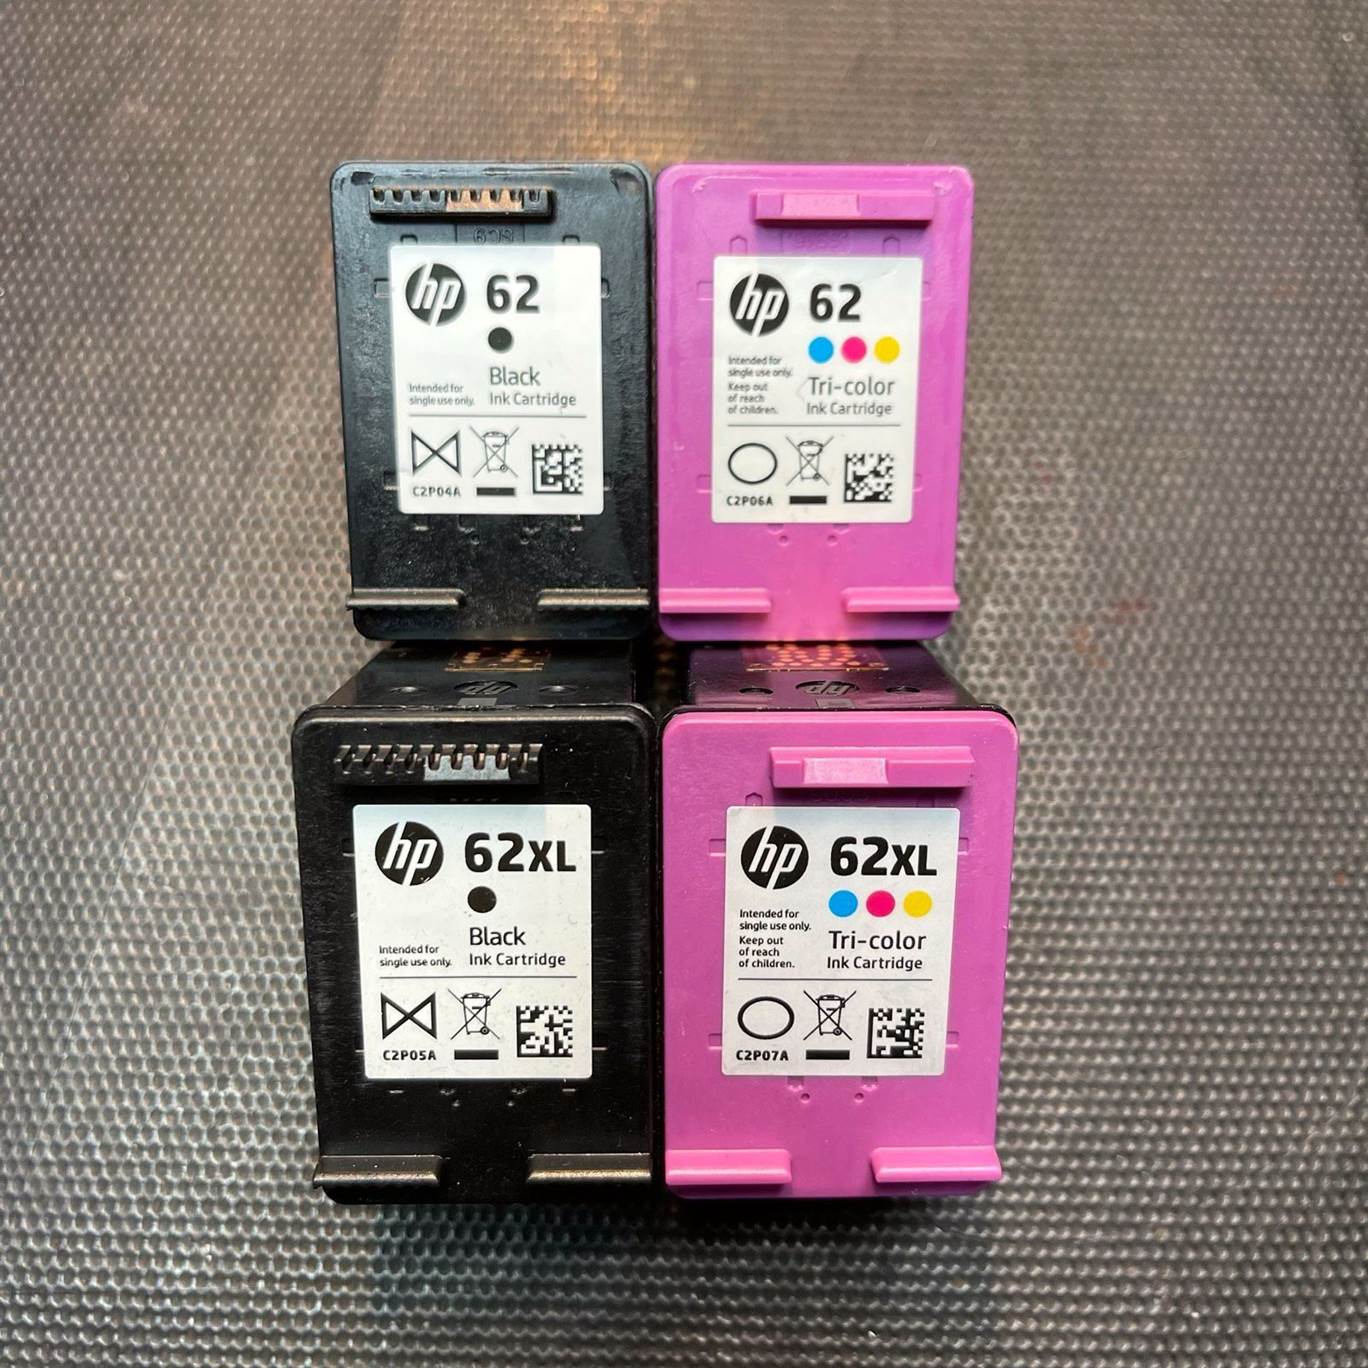 Ankauf leere HP 62 HP 62XL Druckerpatronen leer verkaufen